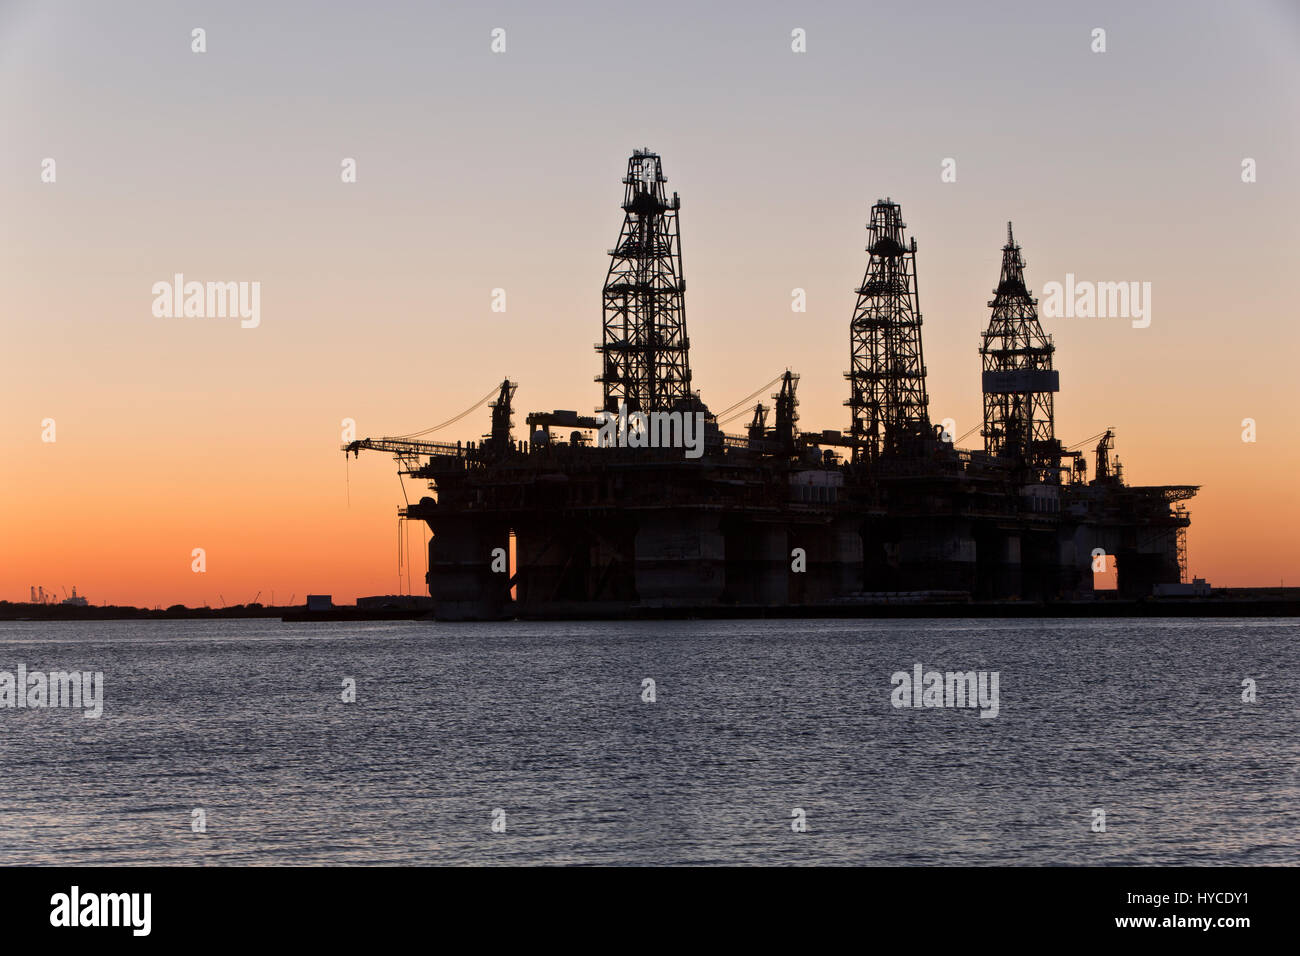 Tiefes Wasser Bohrgeräte vorübergehend im Speicher, Sonnenuntergang, Harbour Island, Canyon Hafen, Port Arius petroleum Aransas. Stockfoto